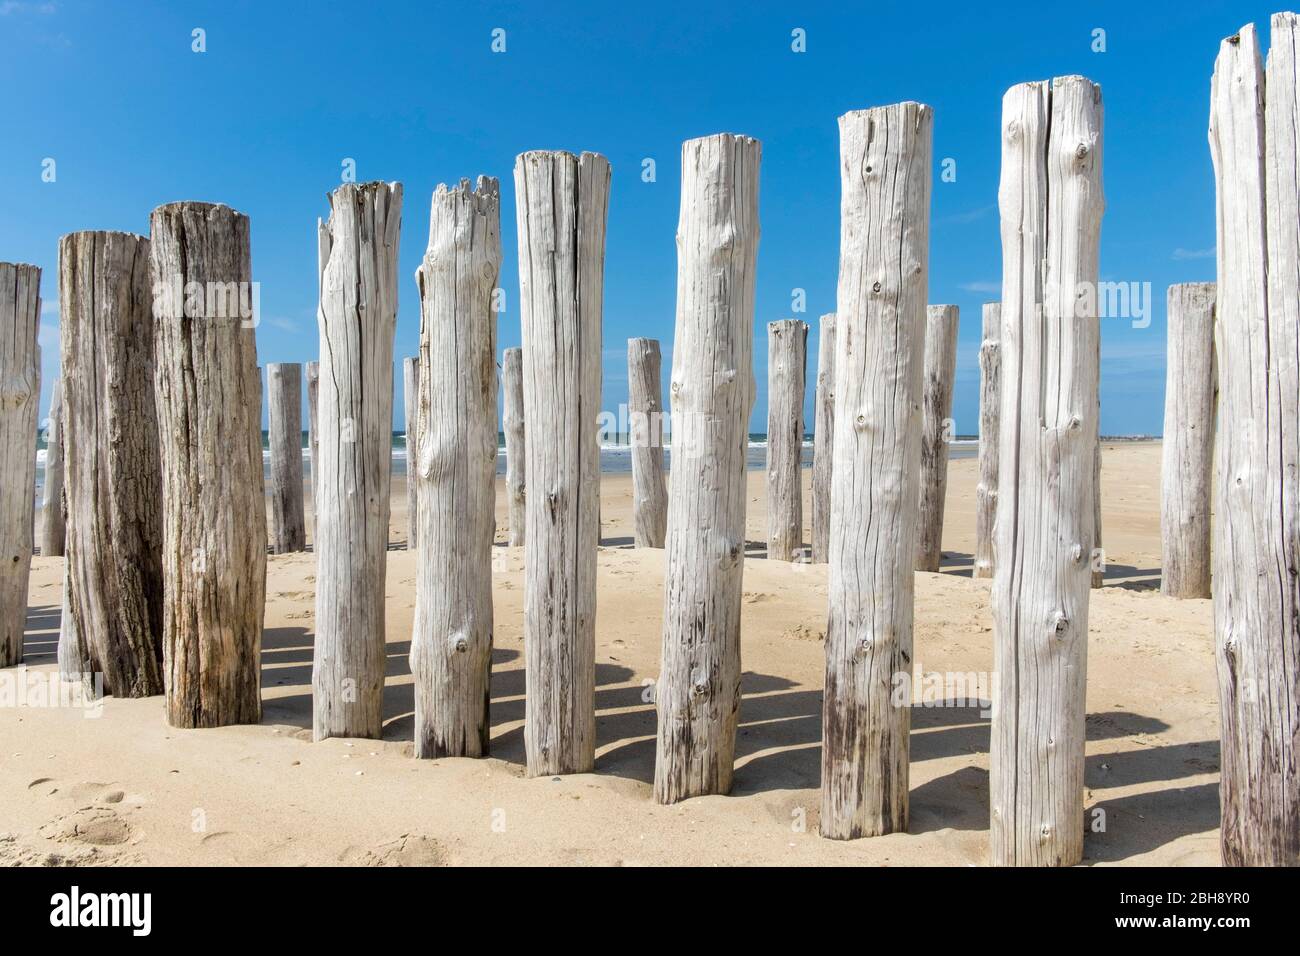 Holzpfähle in Holland mit Blick auf das Meer Stock Photo